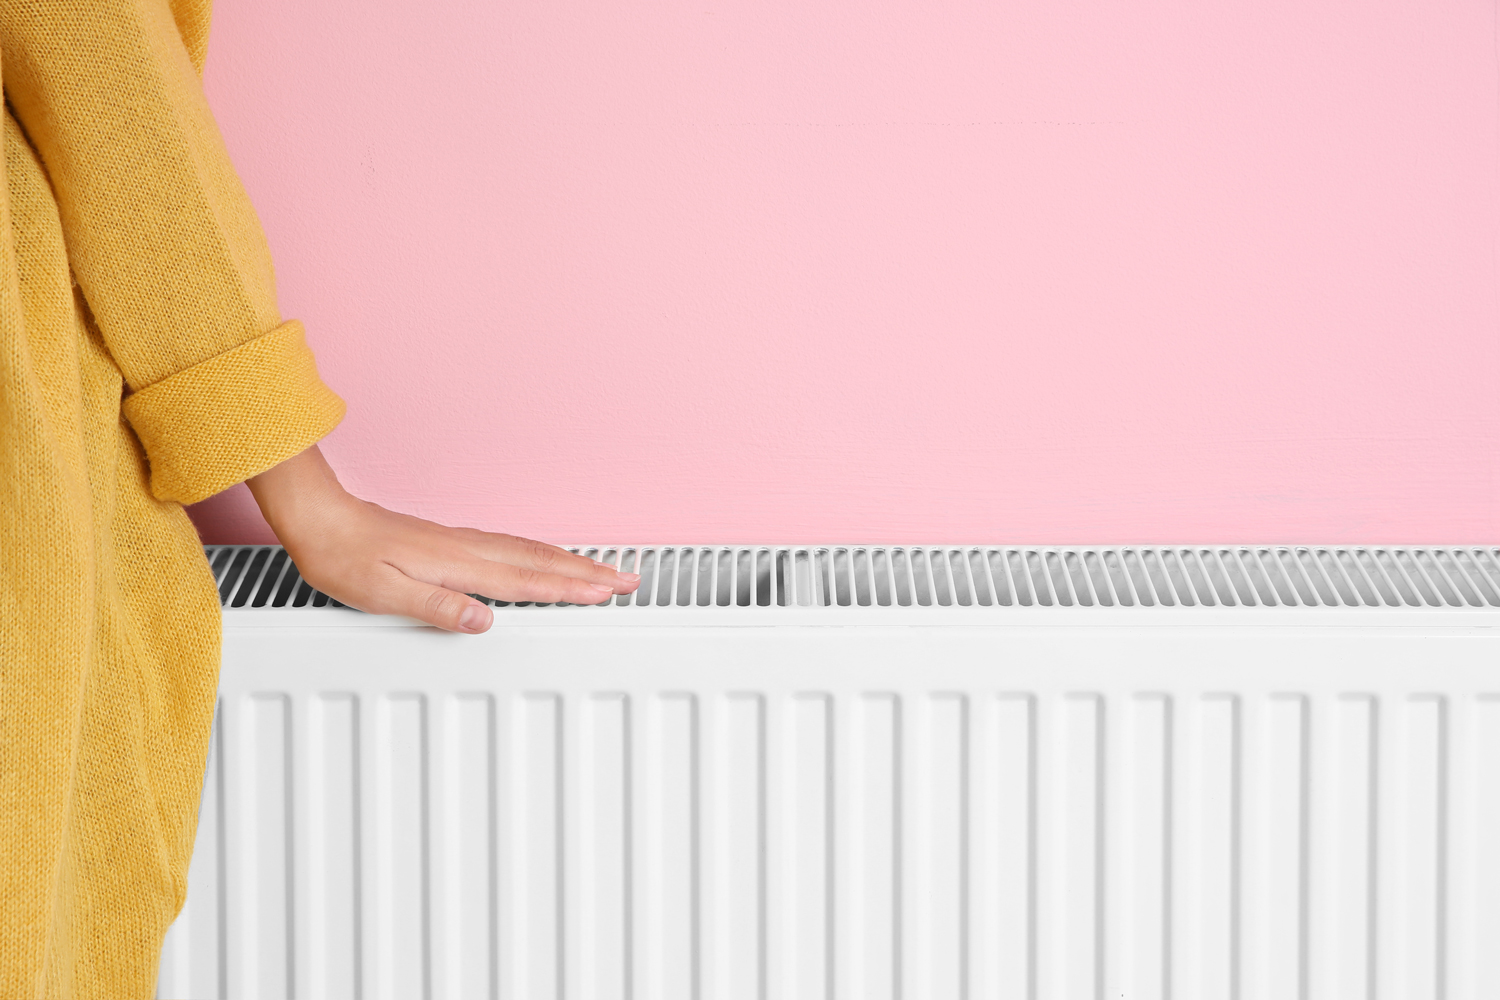 Come pulire i termosifoni di casa: consigli e strumenti utili – SVAI